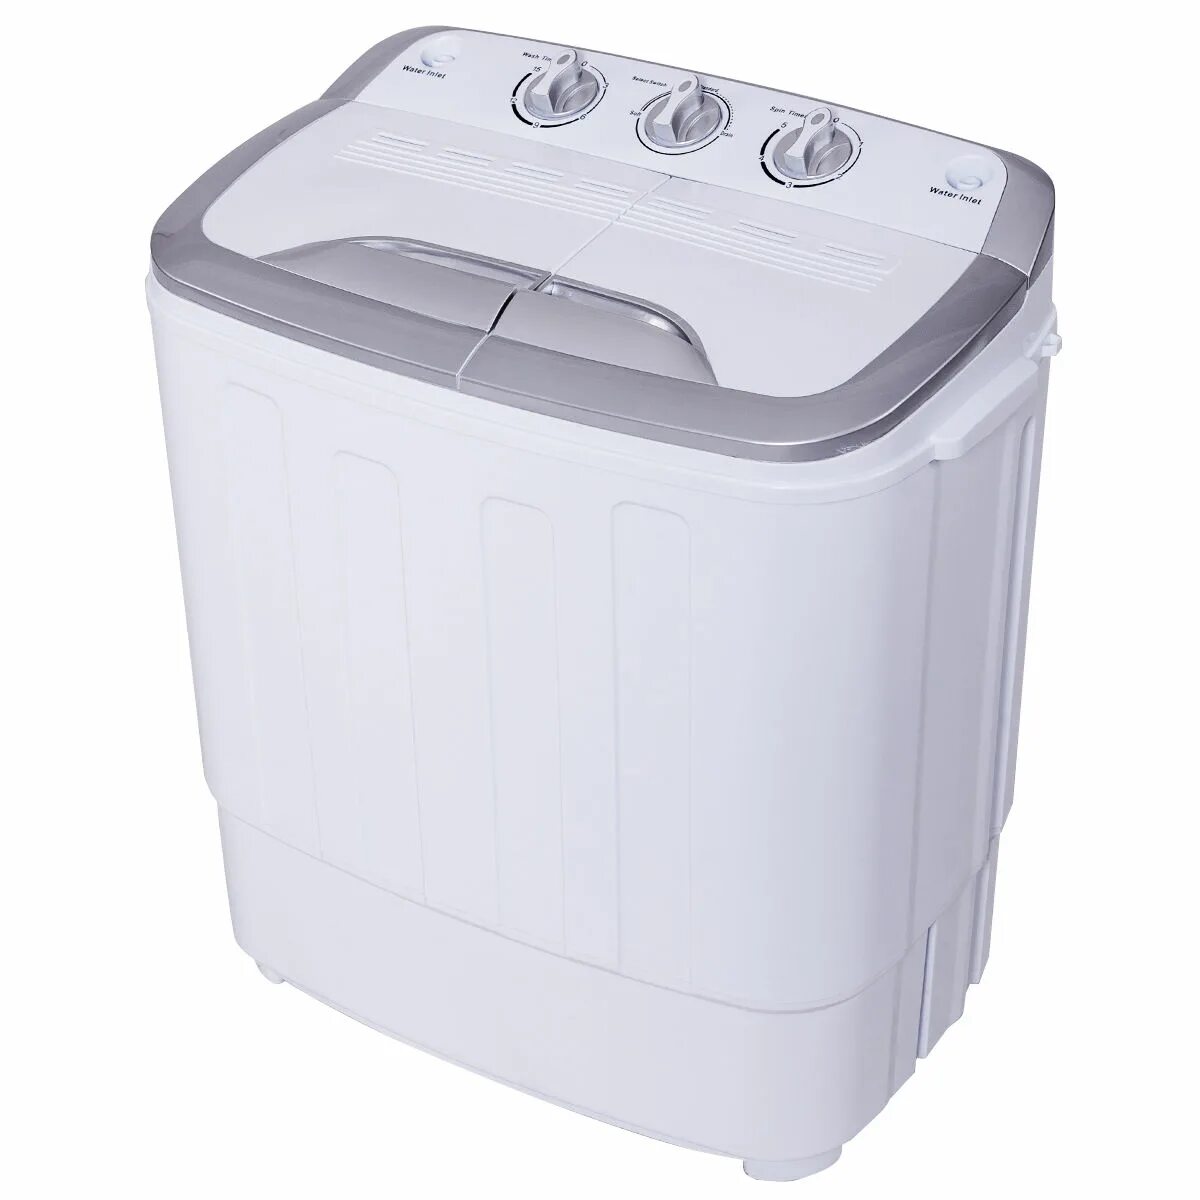 Недорогие стиральные машины. Стиральная машина Мах 1700 lbs. Twin Tub washing Machine. Стиральная машина Малютка автомат для дачи. Мини стиральная машинка для дачи.